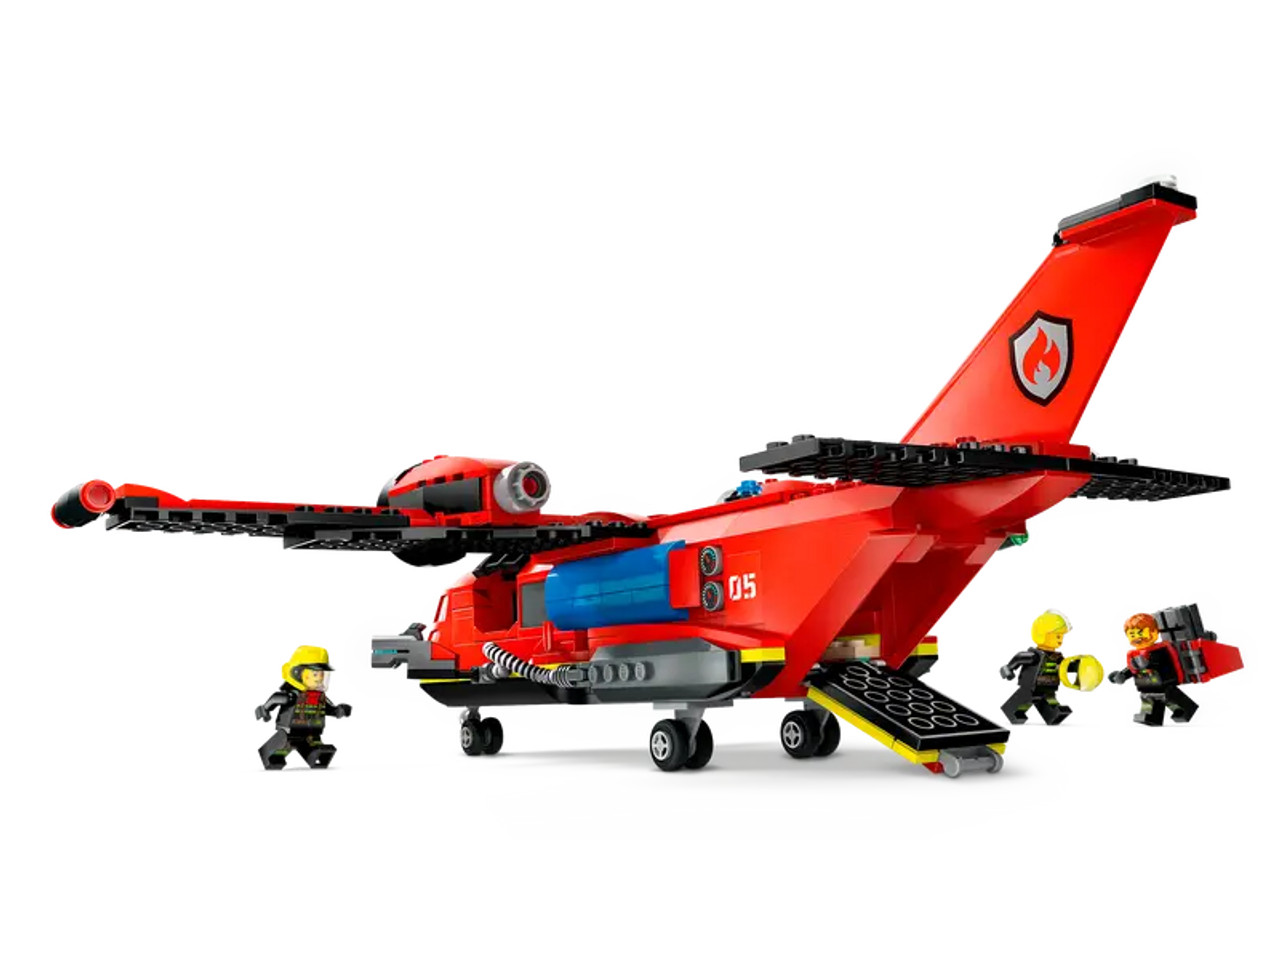 Fire Rescue Plane